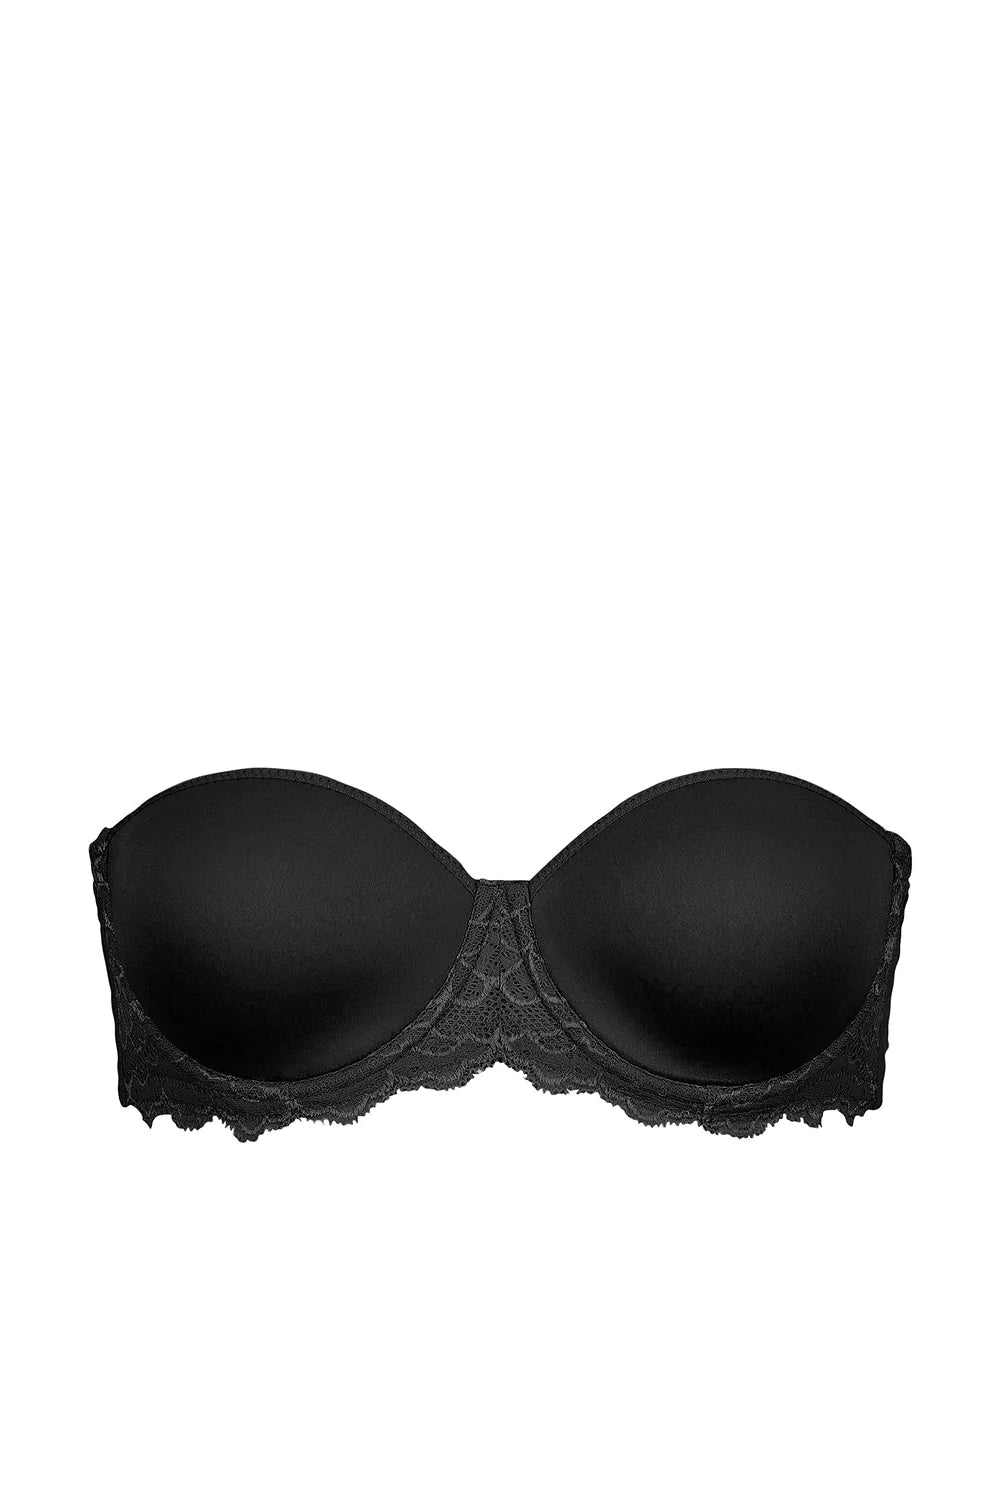 Caresse Strapless Bra - Black - Flirt! Luxe Lingerie & Sleepwear